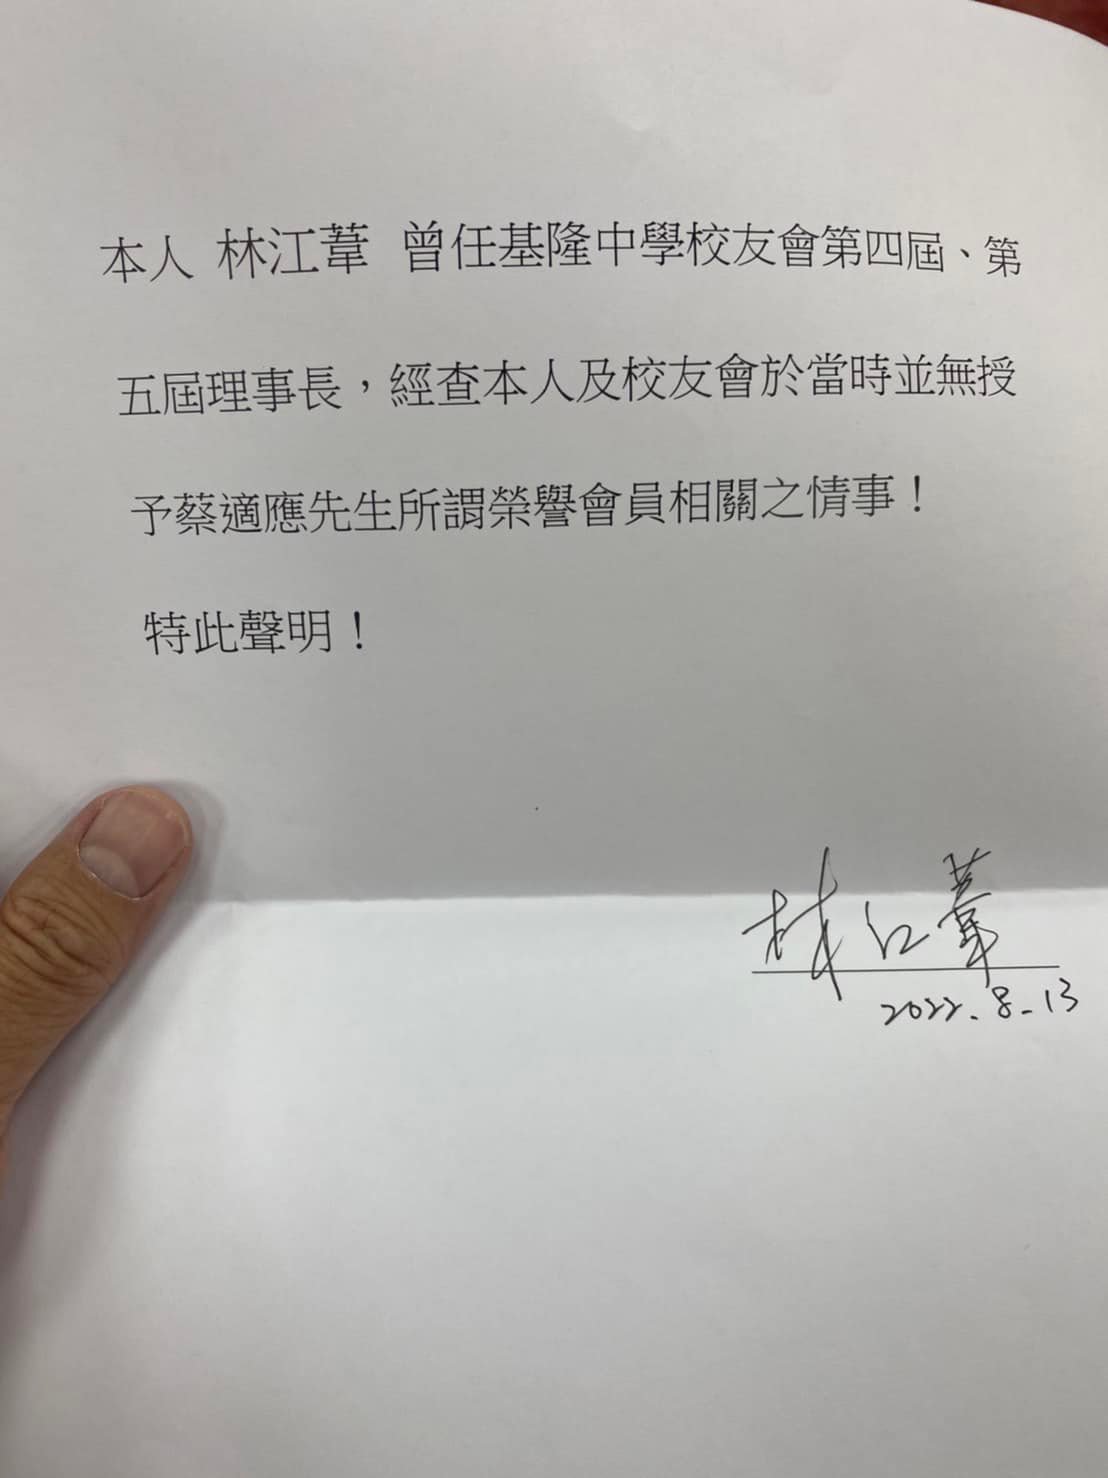 基中校友會第4屆、第5屆理事長林江葦稱無授予蔡適應榮譽會員的聲明。國民黨提供